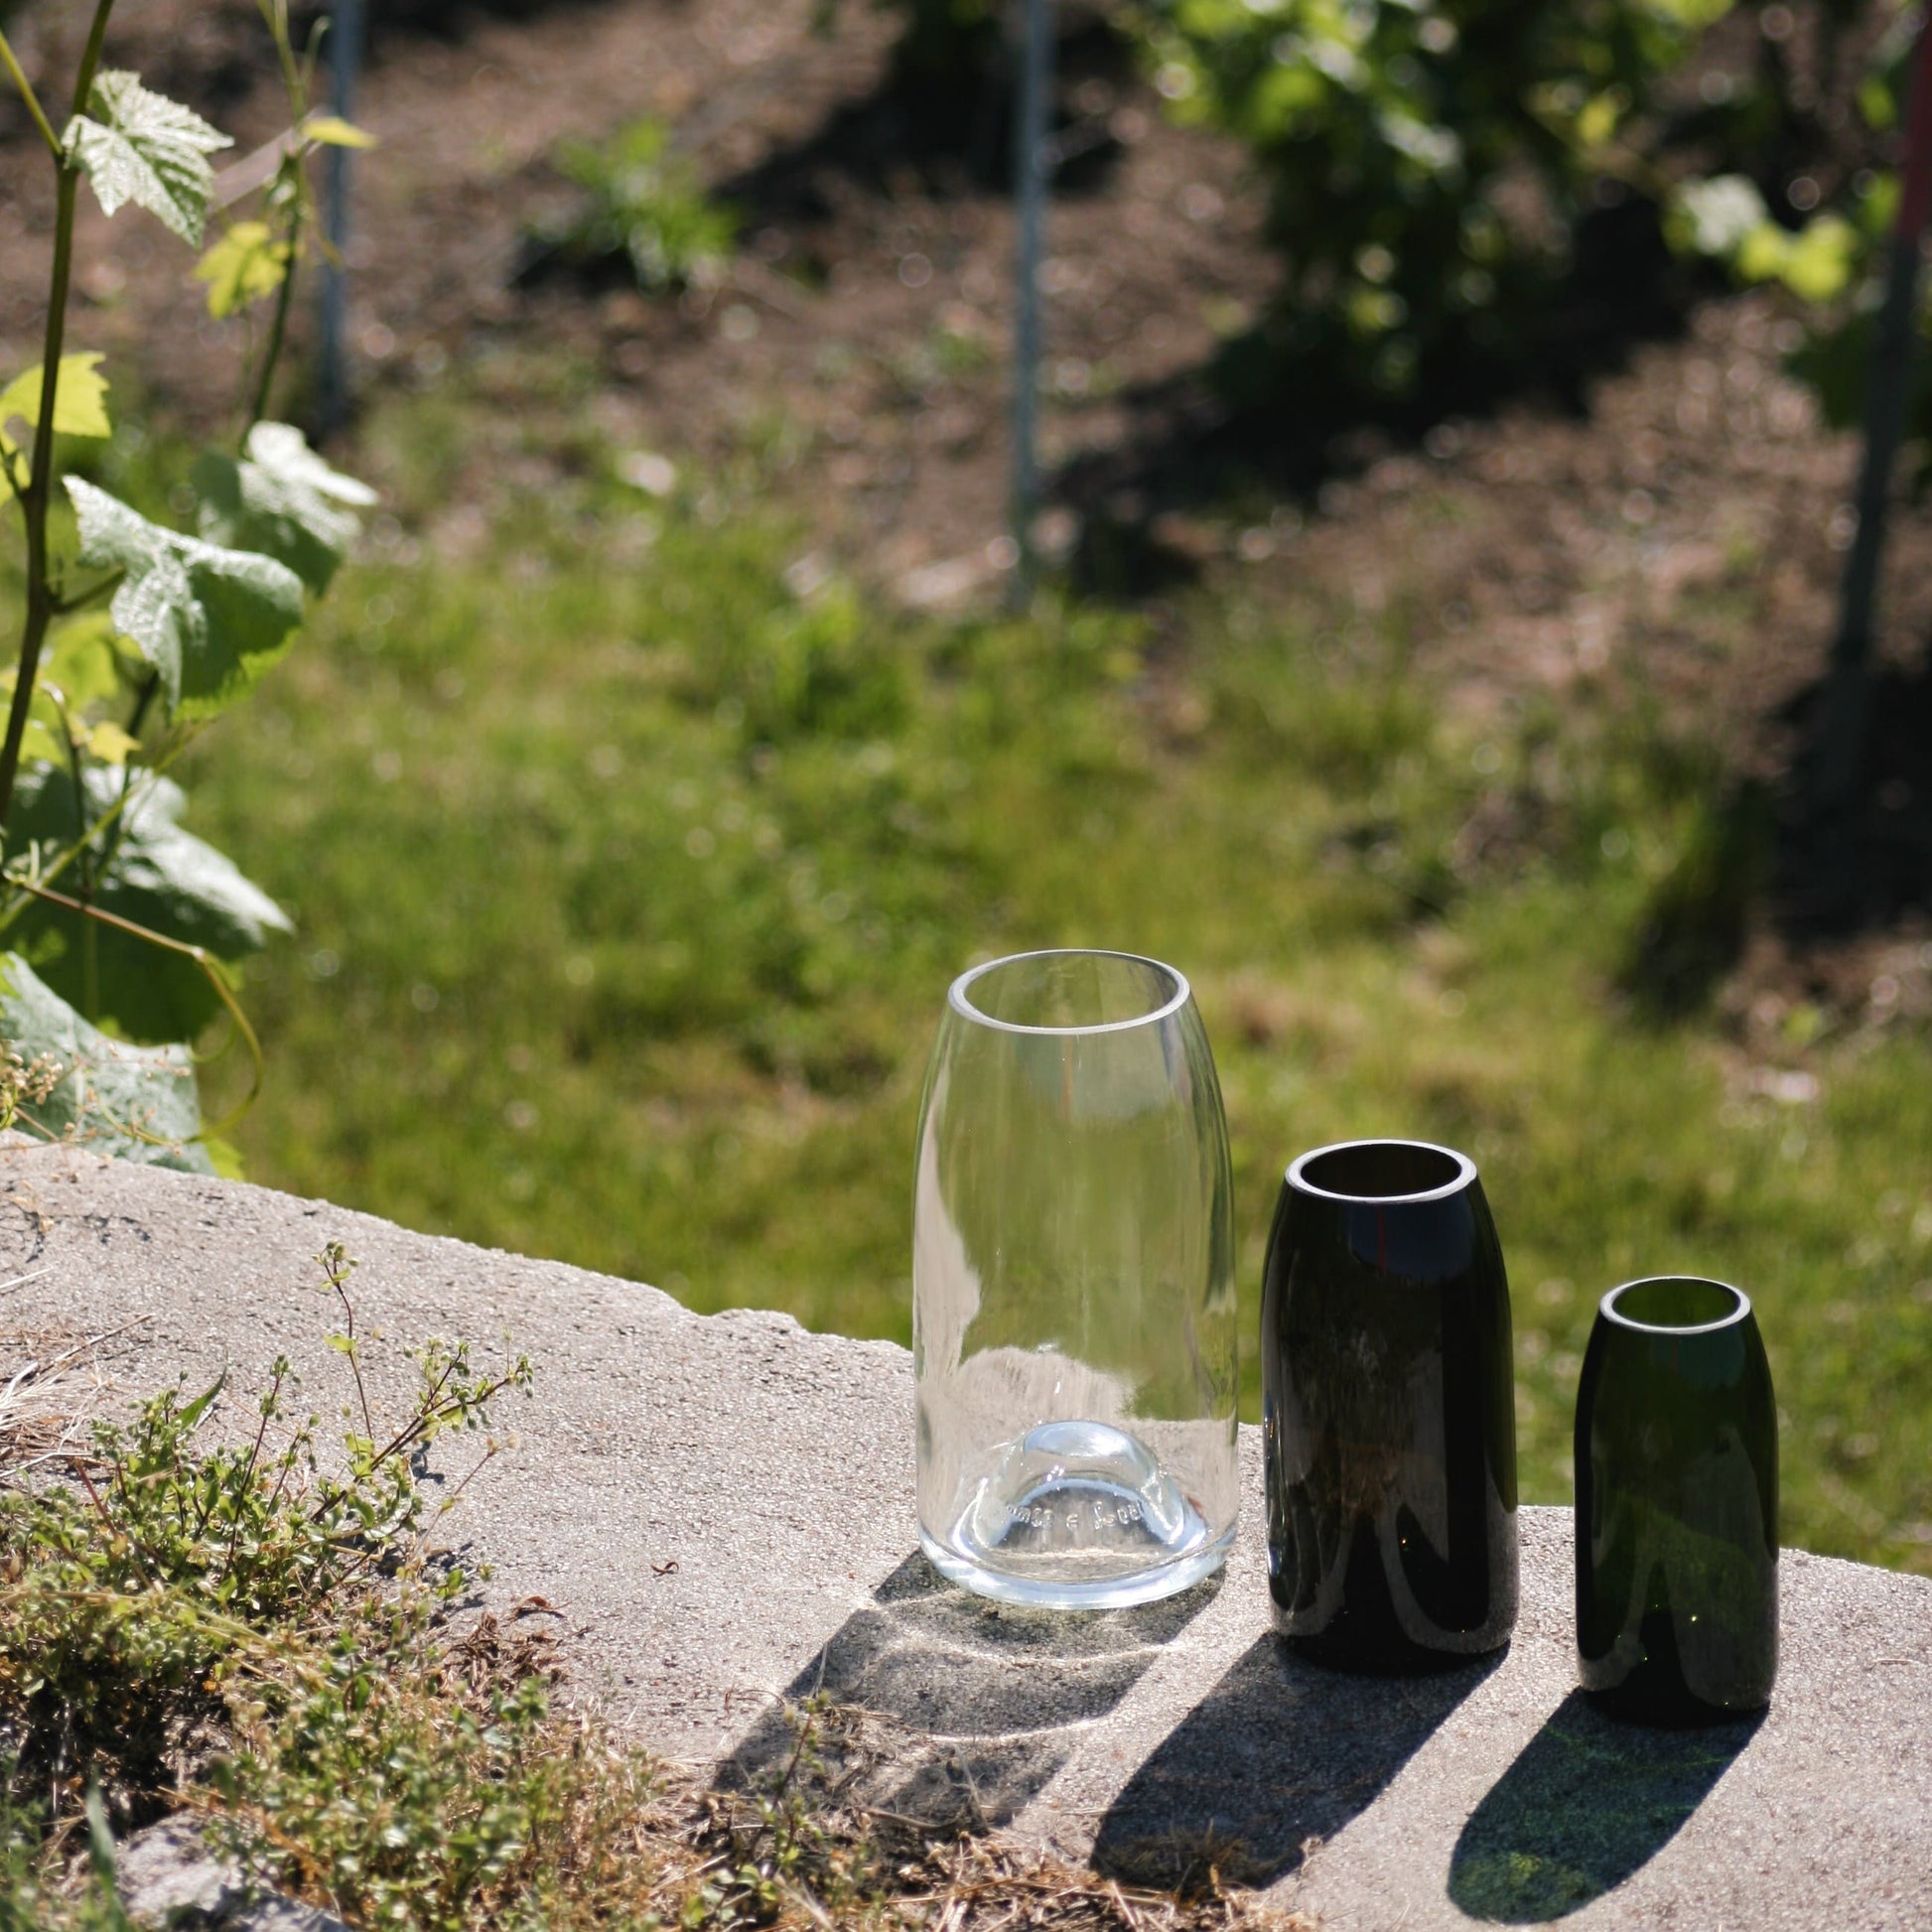 Trois tailles de vases de la gamme Marsault Reims posées dehors au soleil dans les vignes de la marne en France